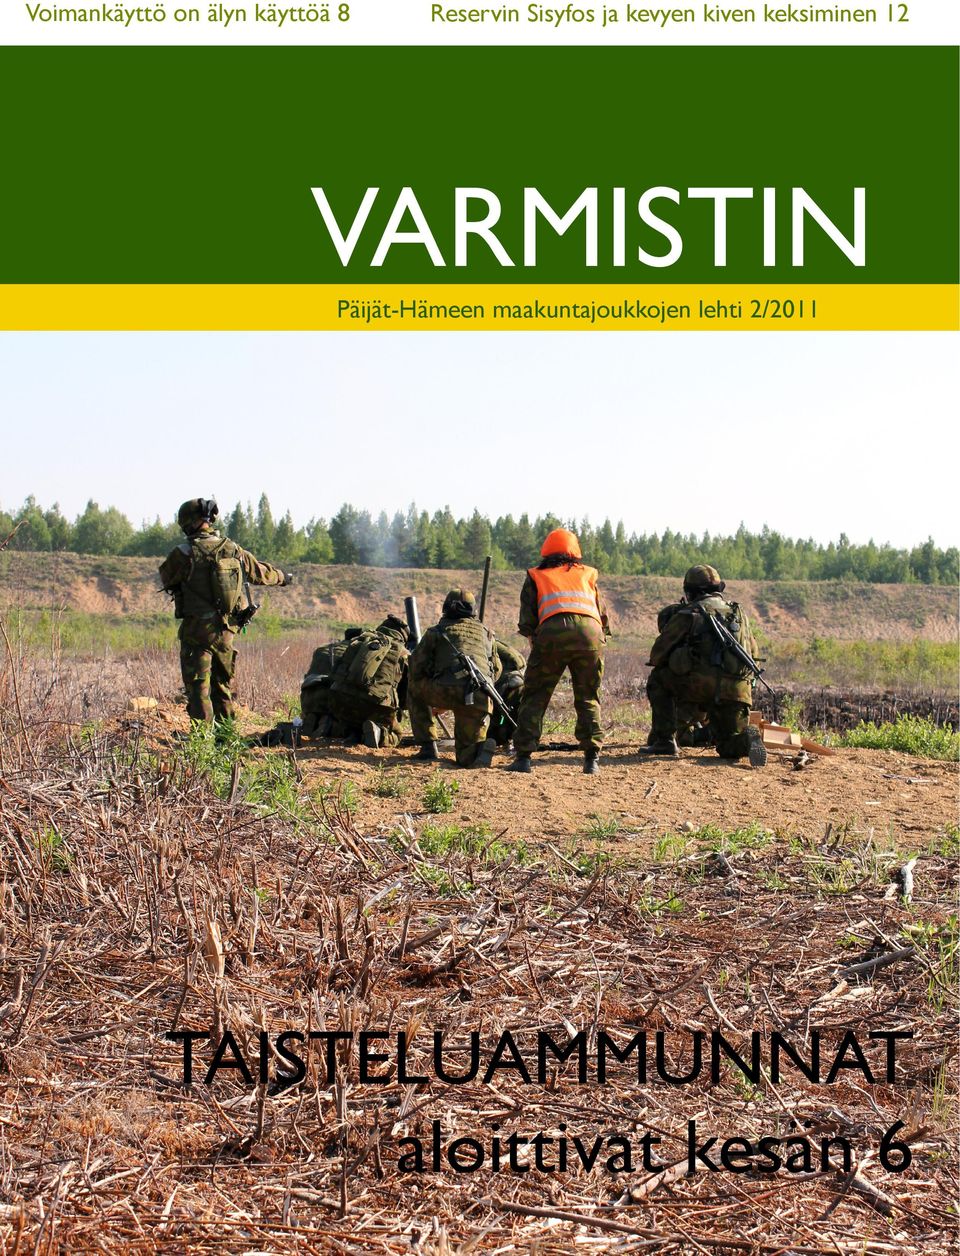 Päijät-Hämeen maakuntajoukkojen lehti 2/2011